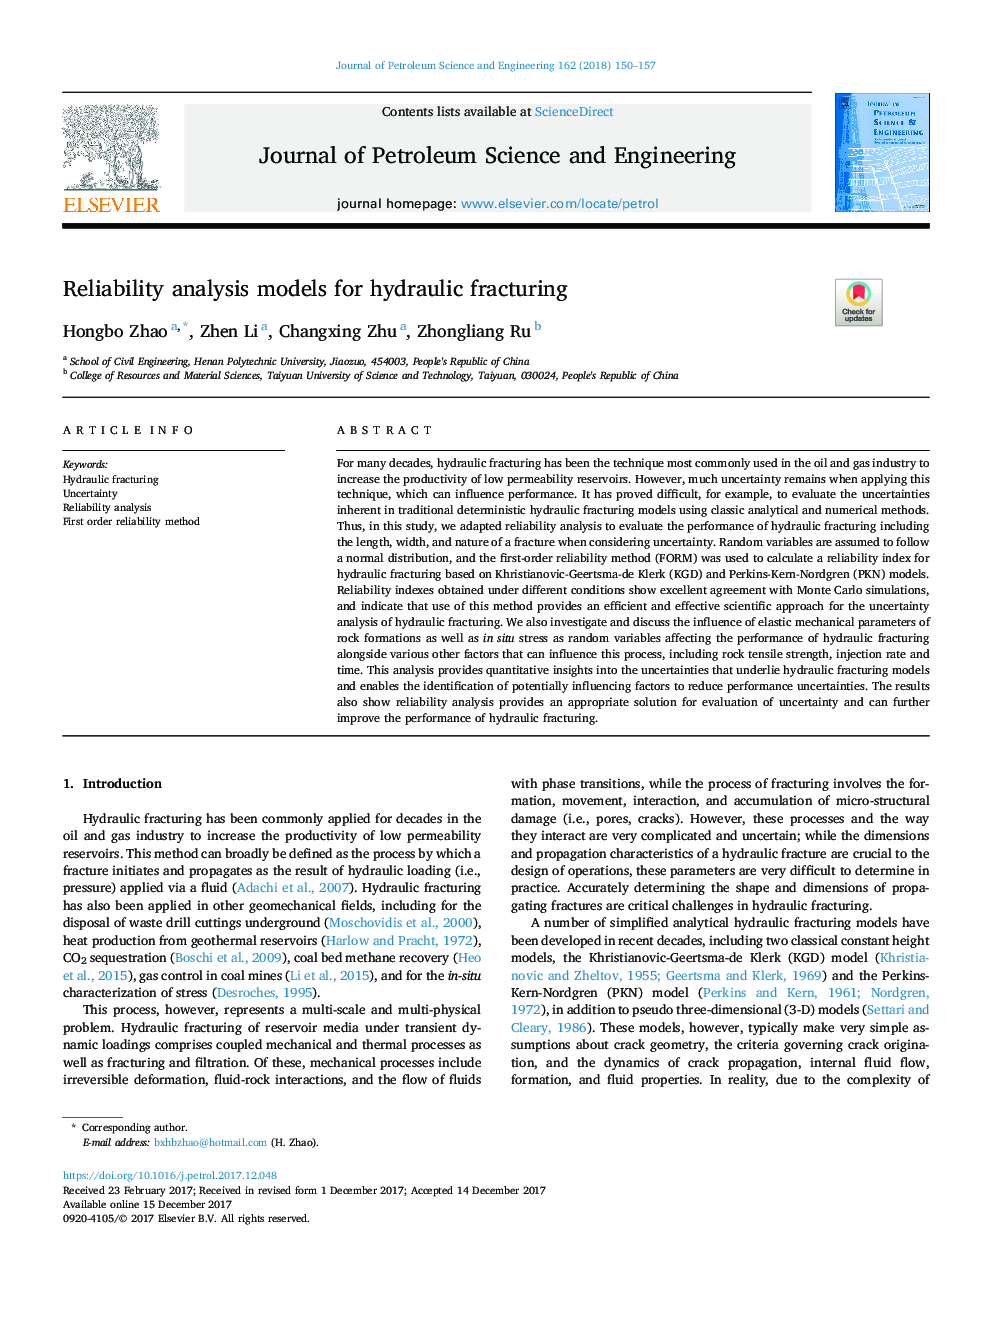 مدل های تحلیل قابلیت اطمینان برای شکستگی هیدرولیکی 